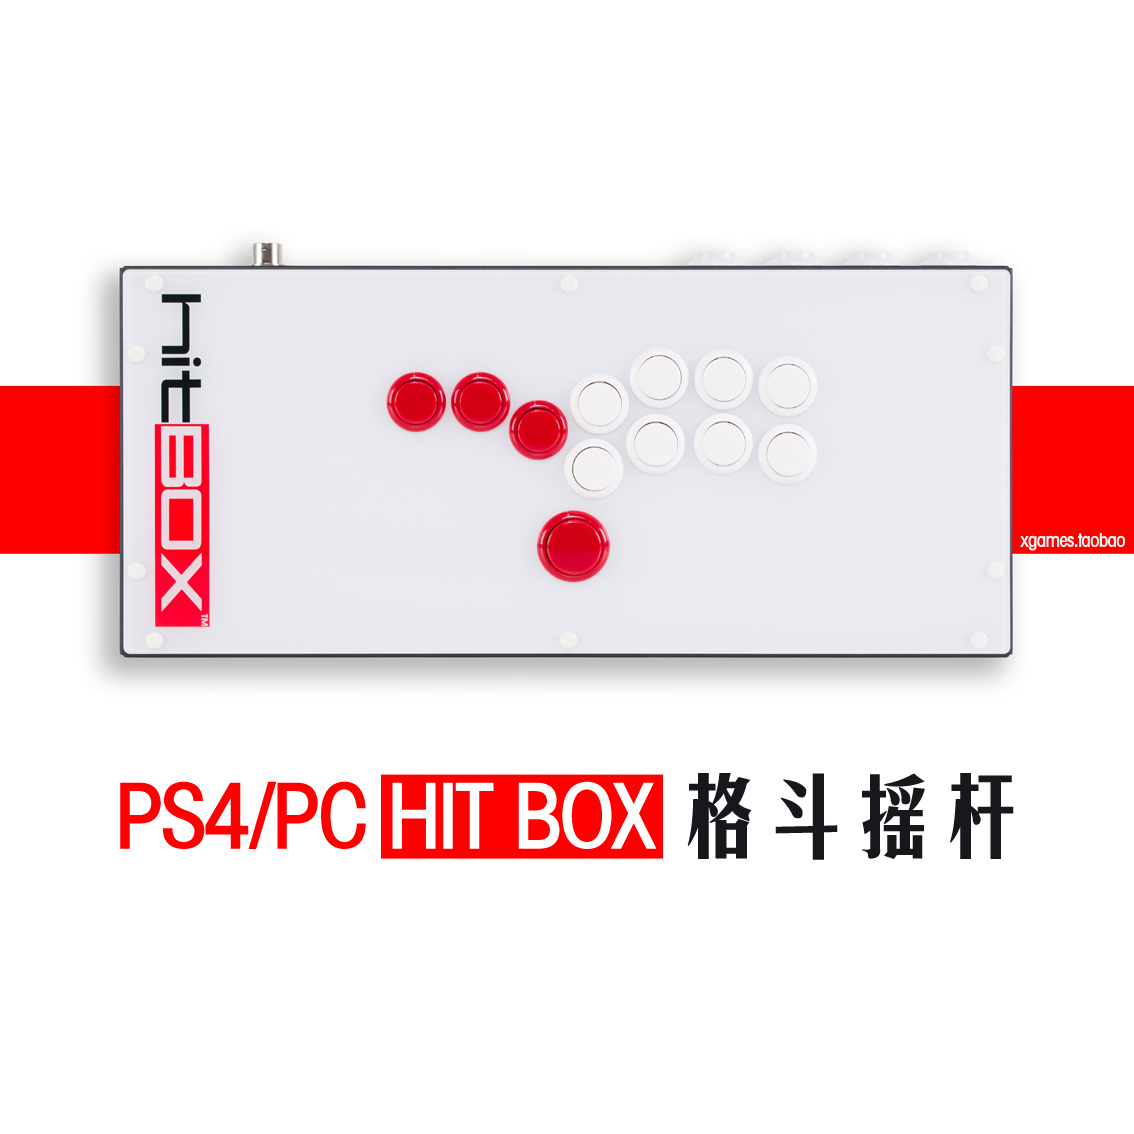 格鬥遊戲革命HIT BOX Cross Up 街霸拳皇高階格鬥遊戲搖桿控制器- Taobao